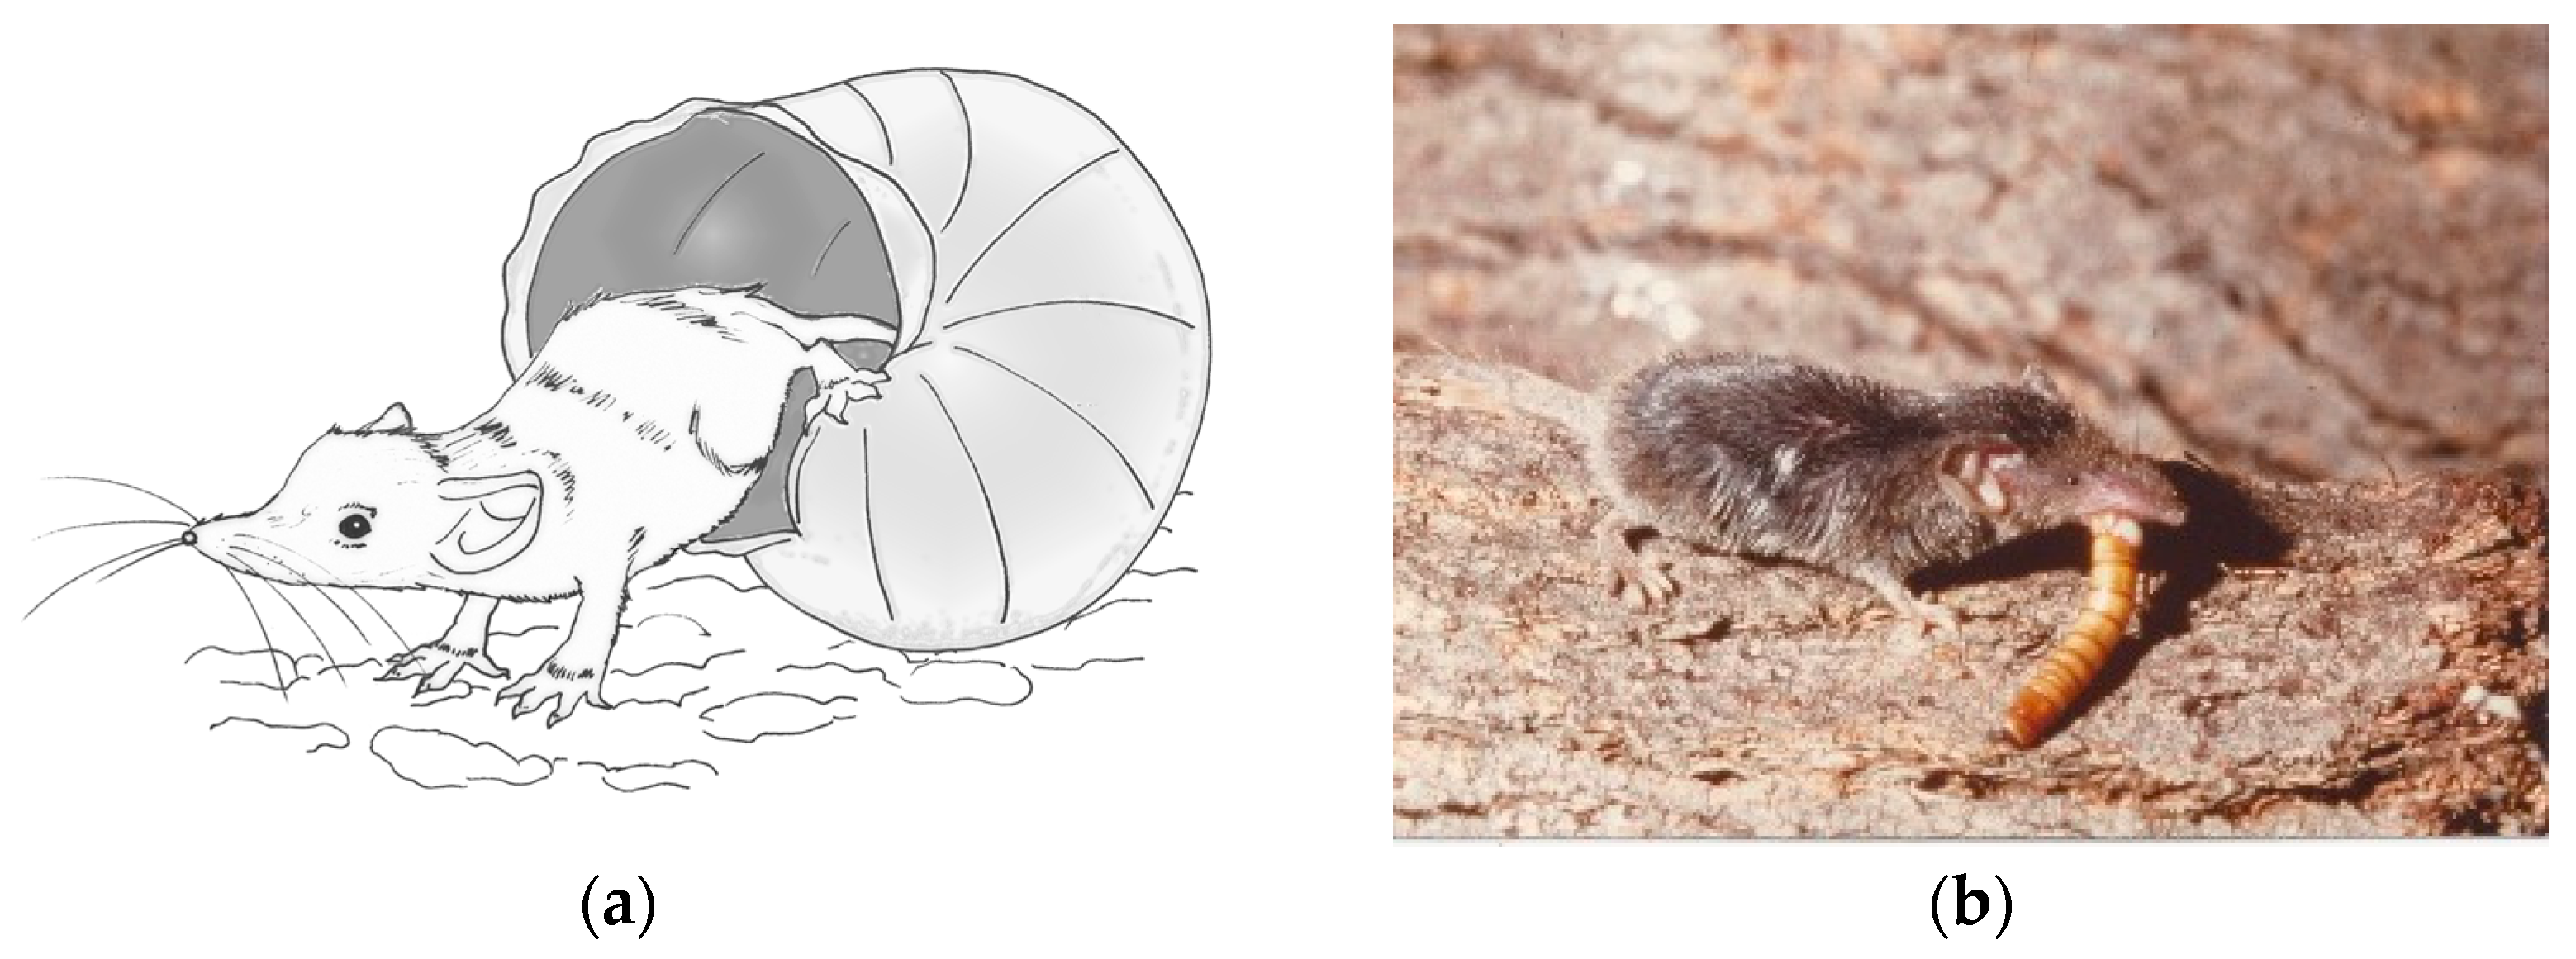 helmint parazitológia paraziták az emberi test tulajdonságaiban